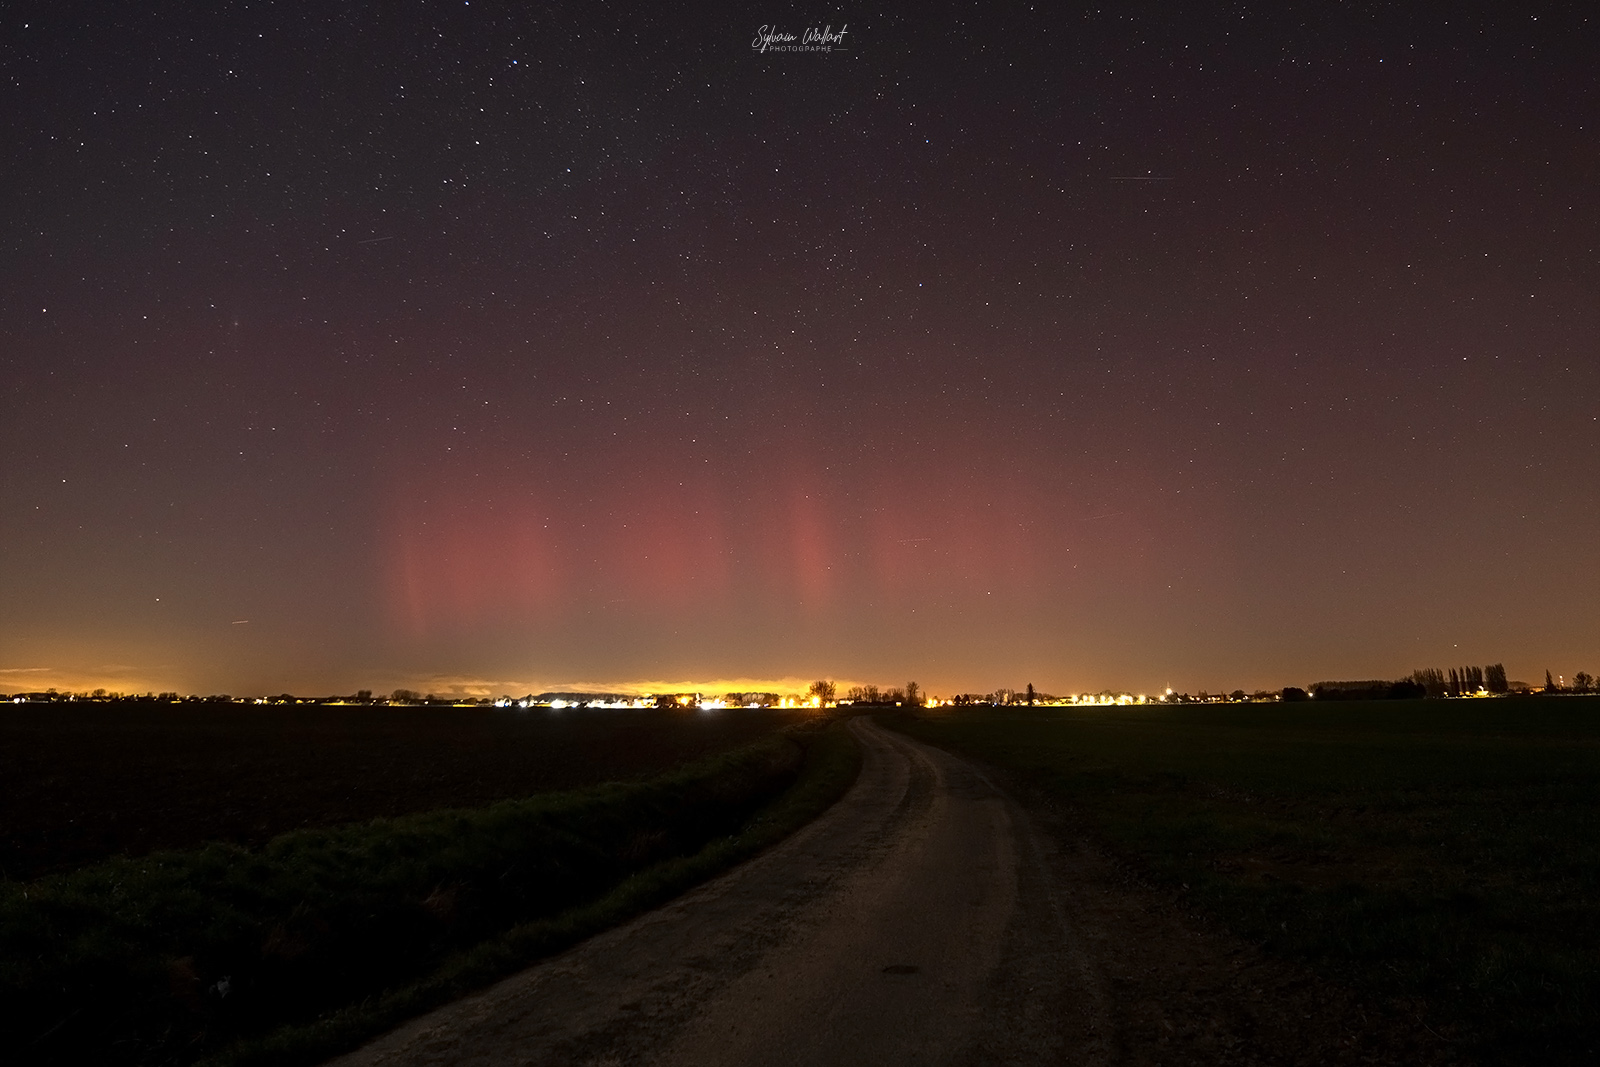 Par chance hier soir, j'ai réussi à photographier des aurores boréales dans le Nord de la France.
Cela à duré une bonne dizaine de minute avant que les aurores s'estompent. - 26/02/2023 22:45 - Sylvain Wallart